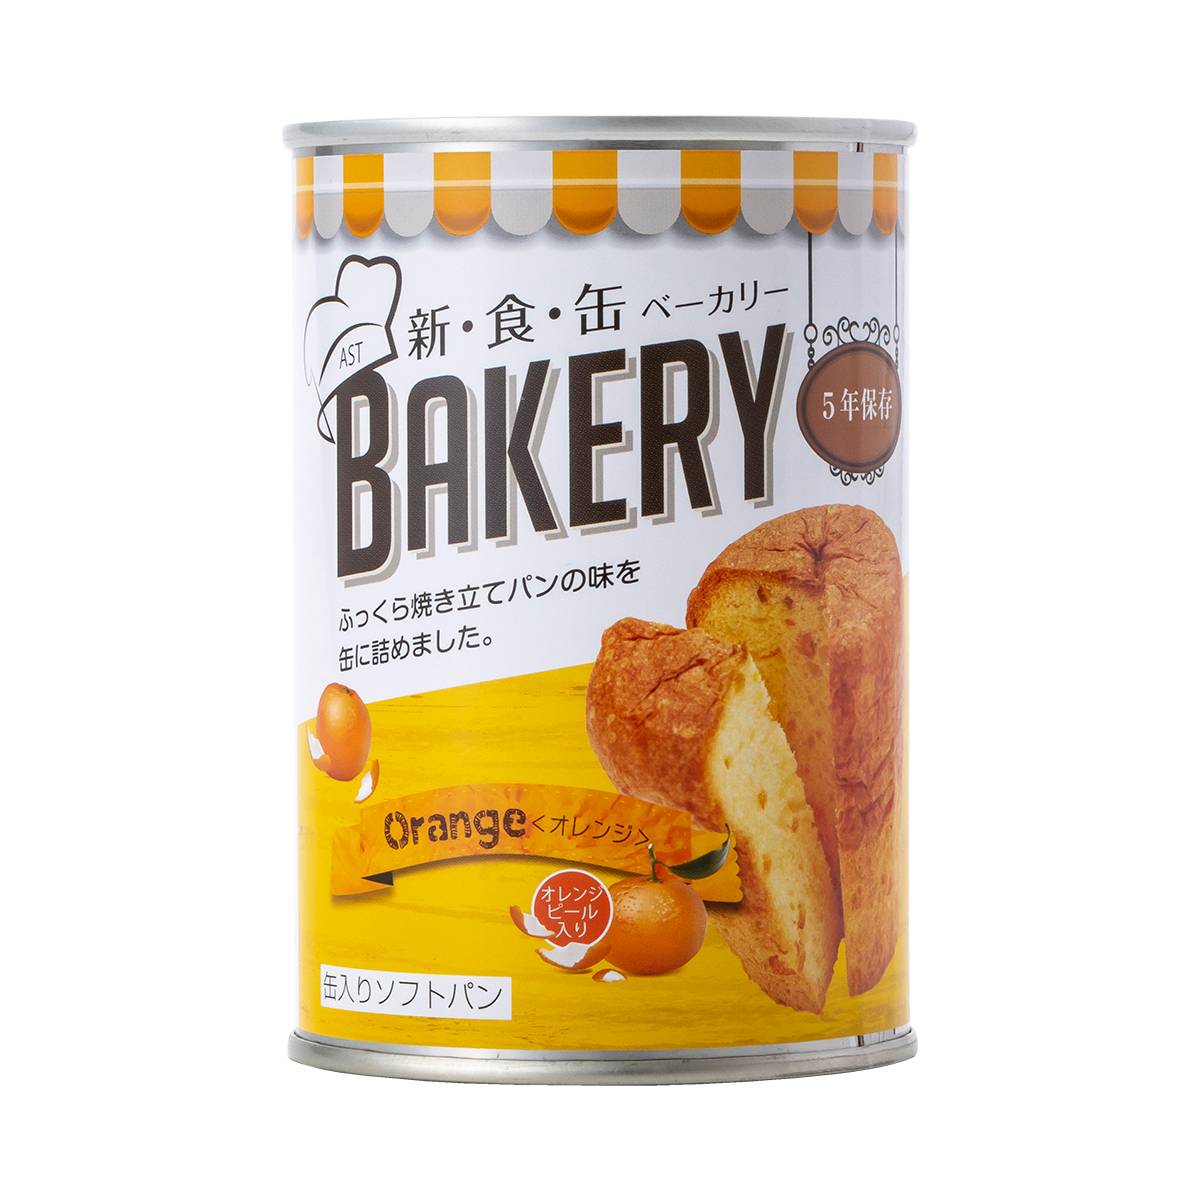 新食缶ベーカリー オレンジ アスト パン 非常食 保存食